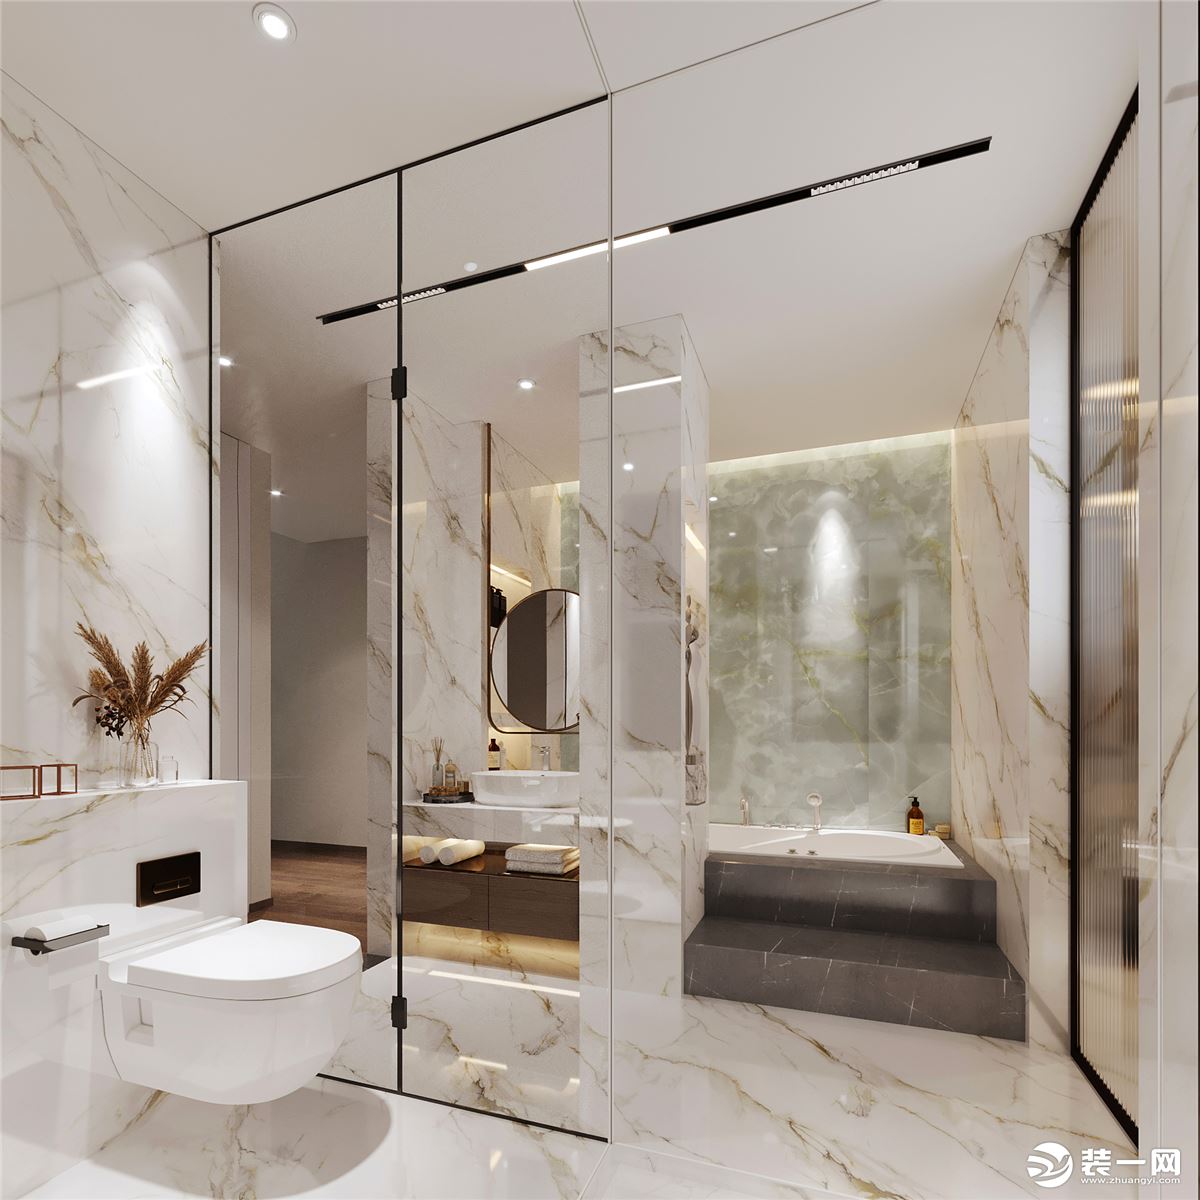 衛生間以白色大理石為主基調，整個空間有一種五星級商務酒店的感覺。